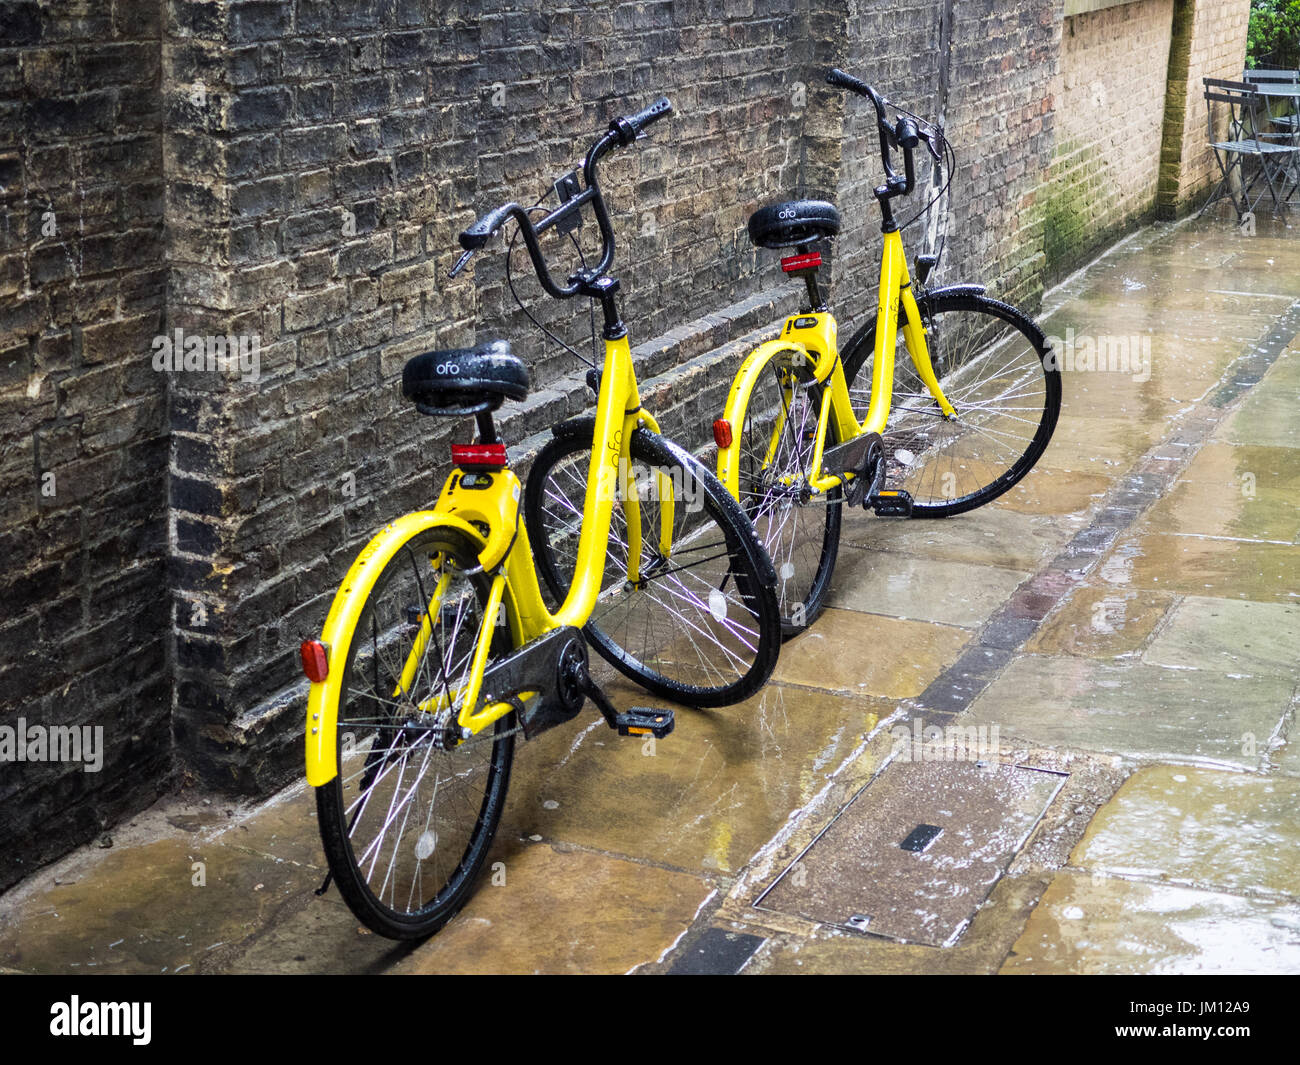 OFO Fahrräder in Cambridge - Teil eines Pilotprojekts die Fahrräder in das VEREINIGTE KÖNIGREICH einzuführen, sie erfordern nicht abholen und an eine Docking Station zurück Stockfoto